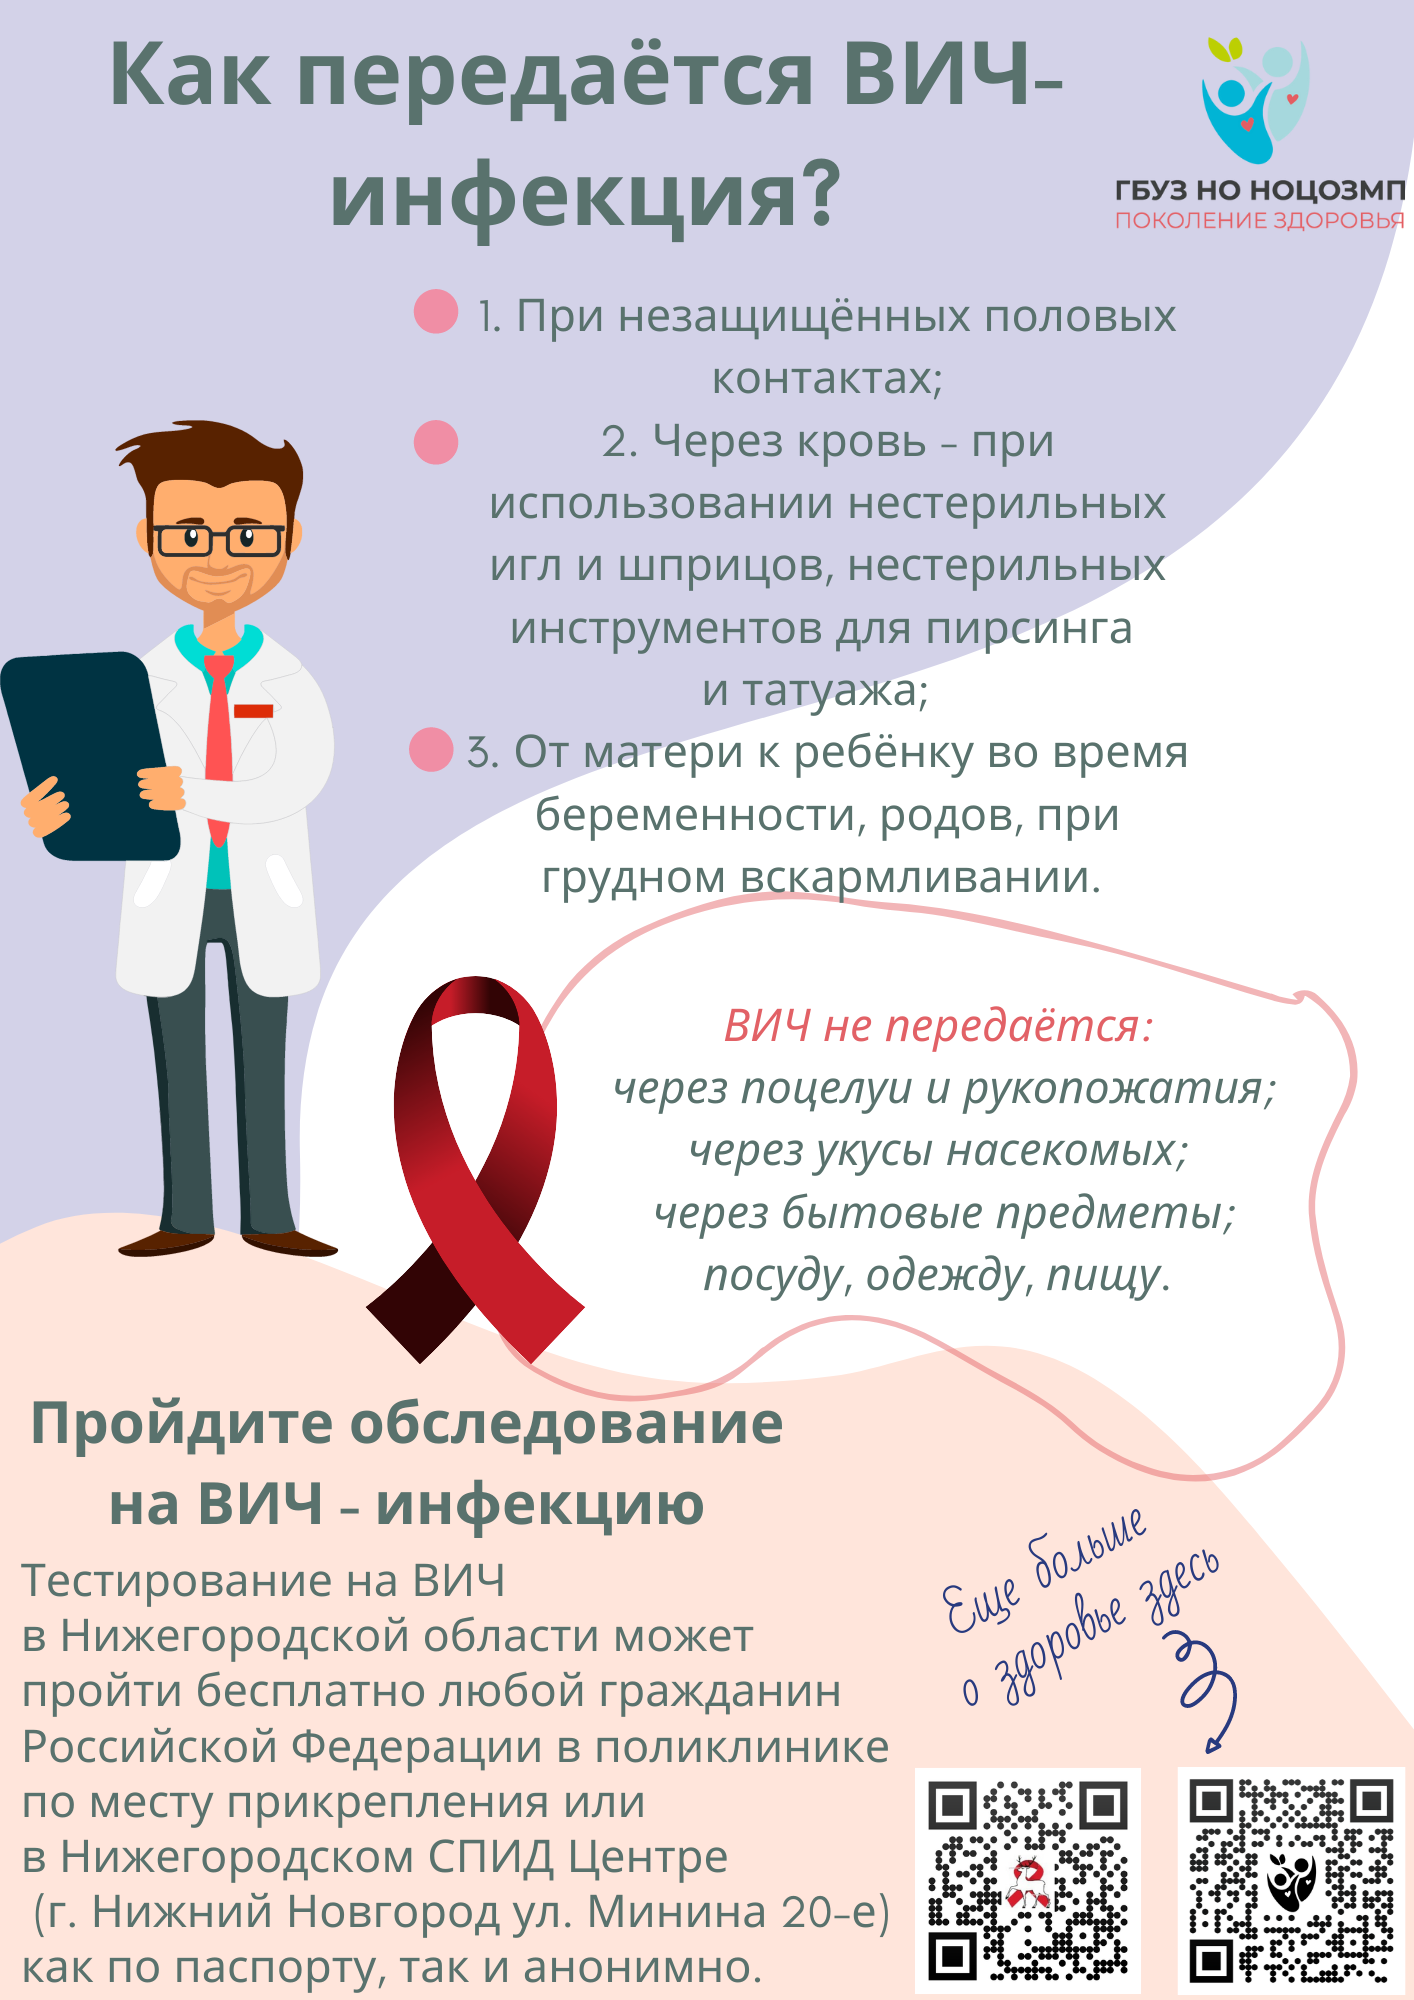 Патолого-анатомическое бюро №1 в г. Новочеркасске :: Базовая информация по вопросам ВИЧ/СПИДа